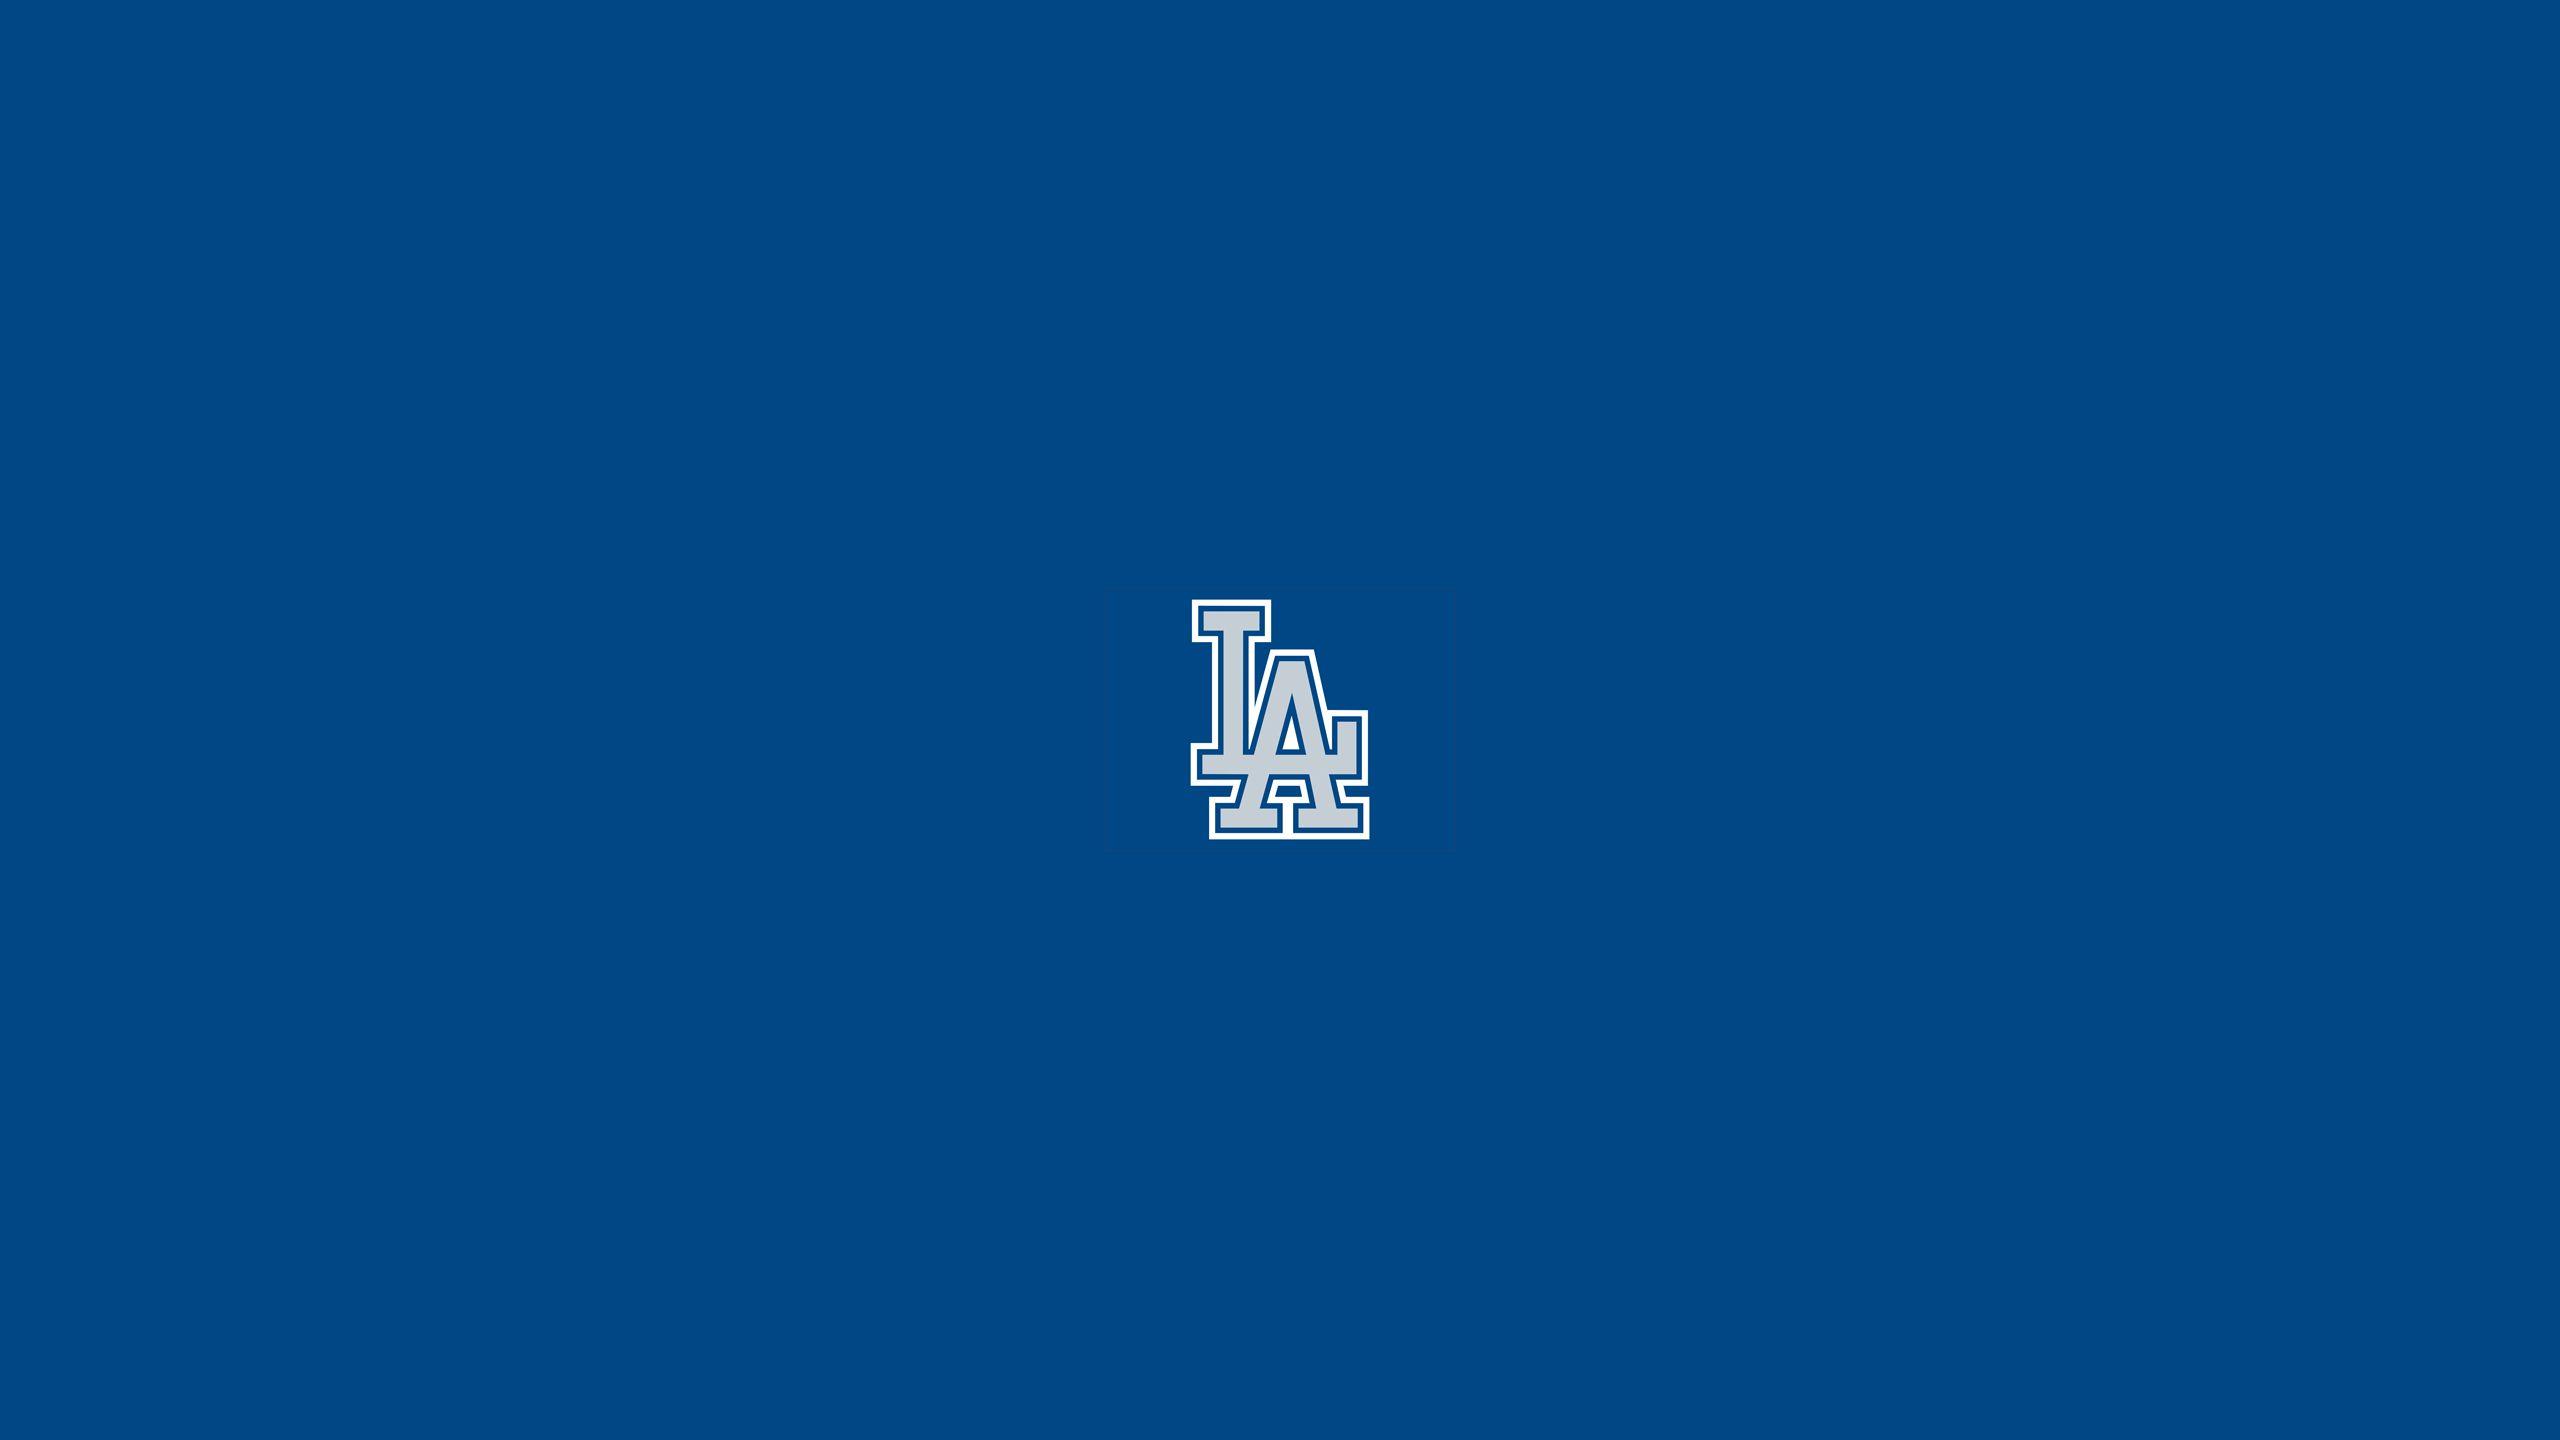 Los Angeles Dodgers 4k Ultra HD Wallpaper